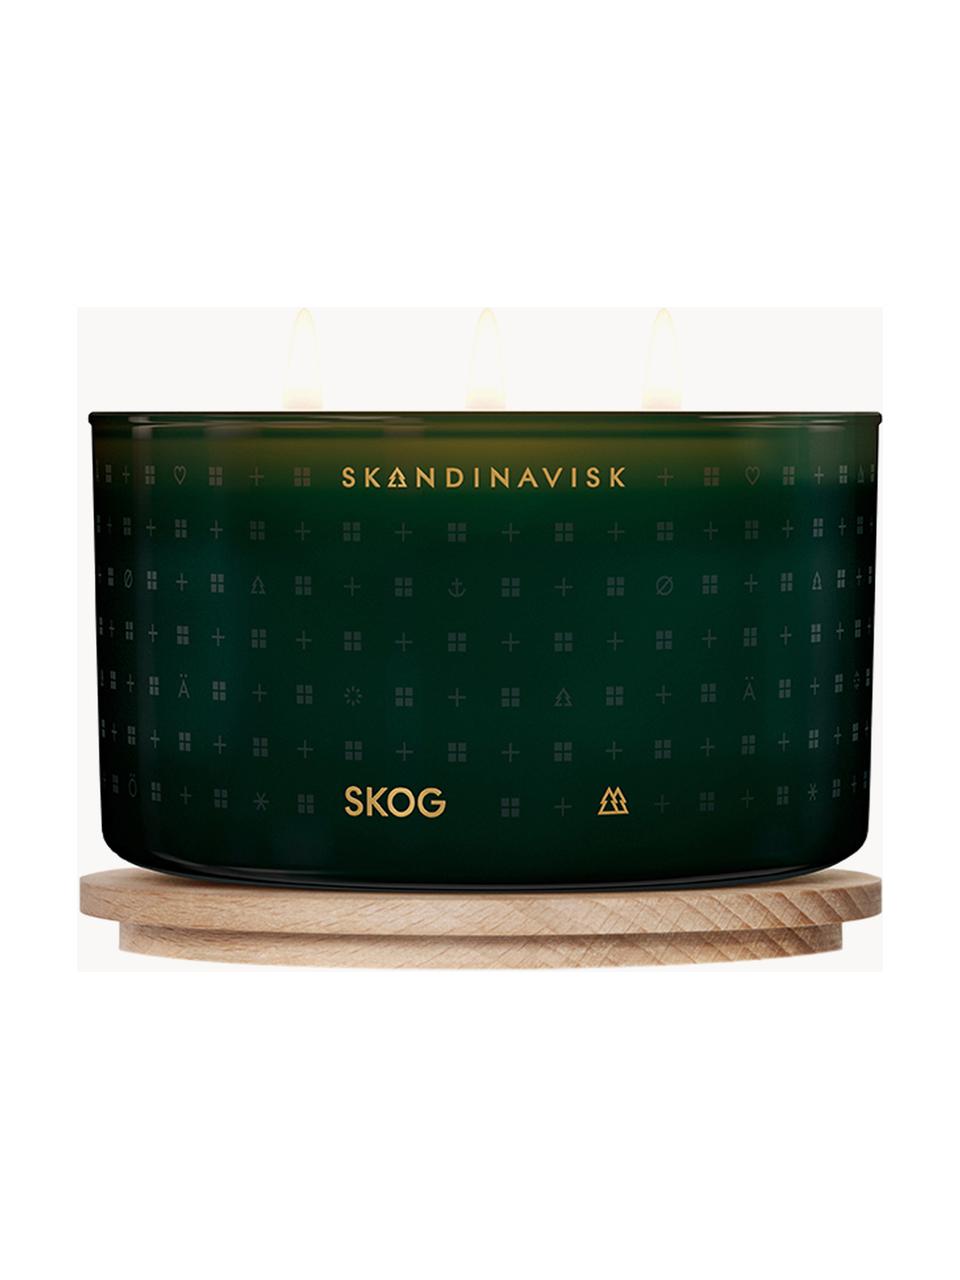 Vonná svíčka se třemi knoty Skog (borovicové jehličí, šišky, březová míza), Borové jehličí, šišky, březová míza, Ø 14 cm, V 8 cm